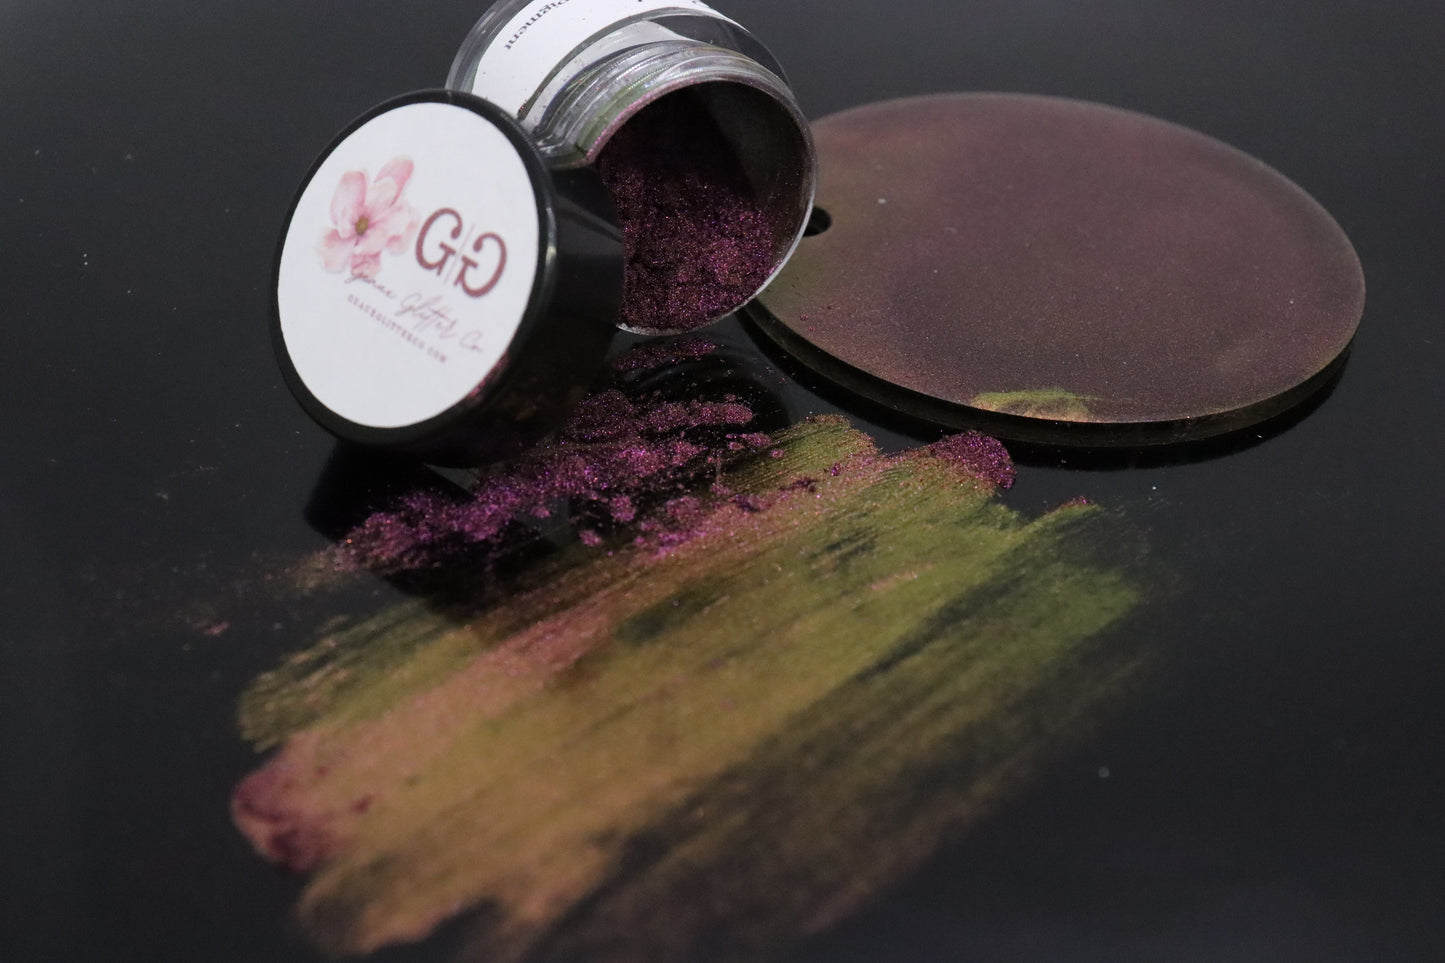 Rose' - 2 Grams Super Chameleon Holographic Chrome Pigment